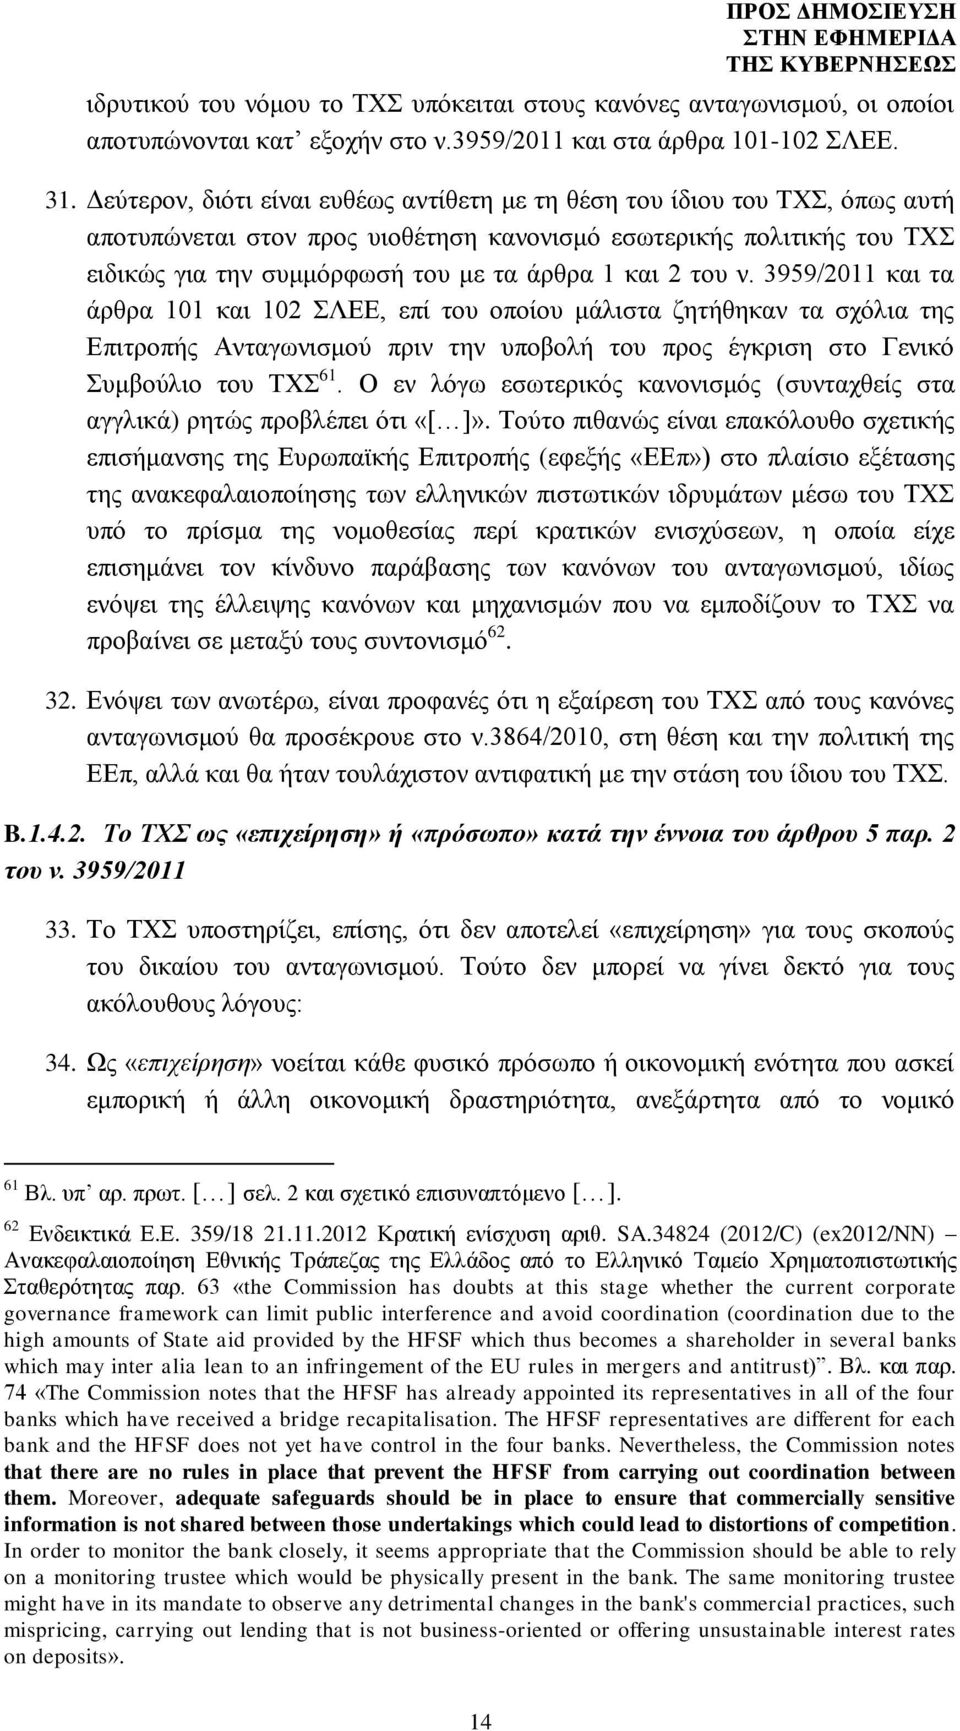 2 του ν. 3959/2011 και τα άρθρα 101 και 102 ΣΛΕΕ, επί του οποίου μάλιστα ζητήθηκαν τα σχόλια της Επιτροπής Ανταγωνισμού πριν την υποβολή του προς έγκριση στο Γενικό Συμβούλιο του ΤΧΣ 61.